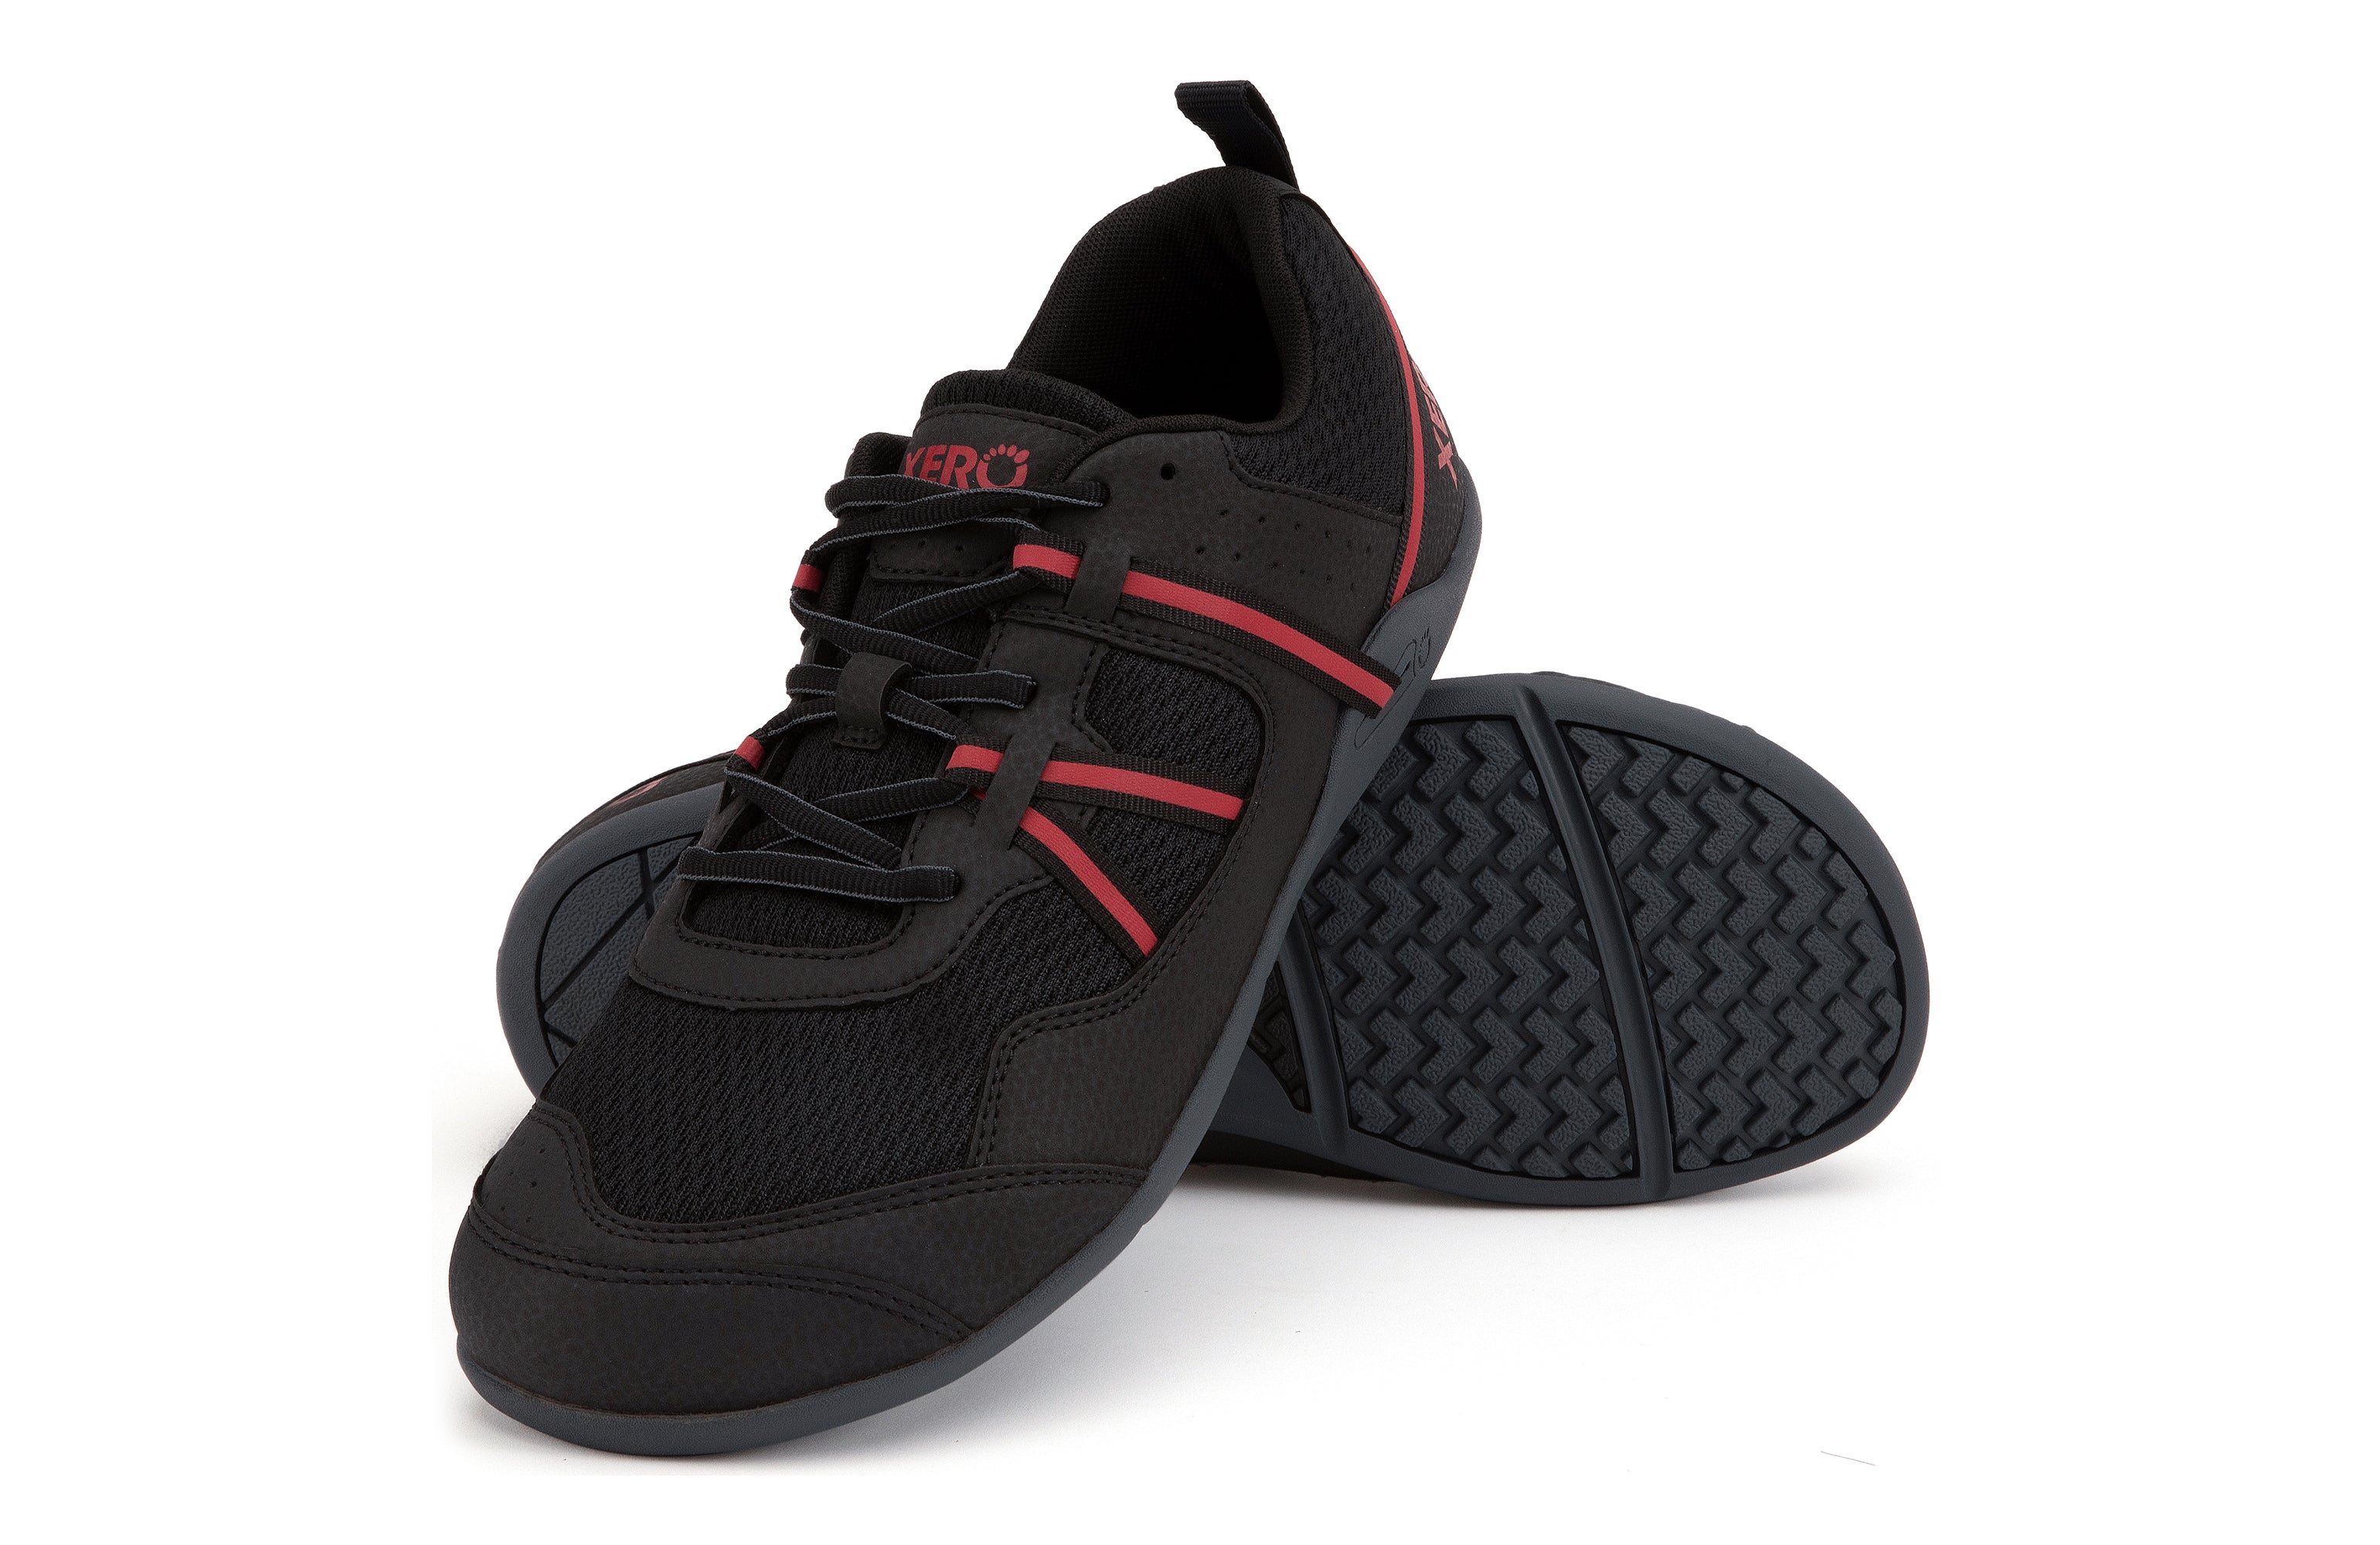 Xero Shoes Prio barfods løbesko/træningssko til mænd i farven black / samba red, par